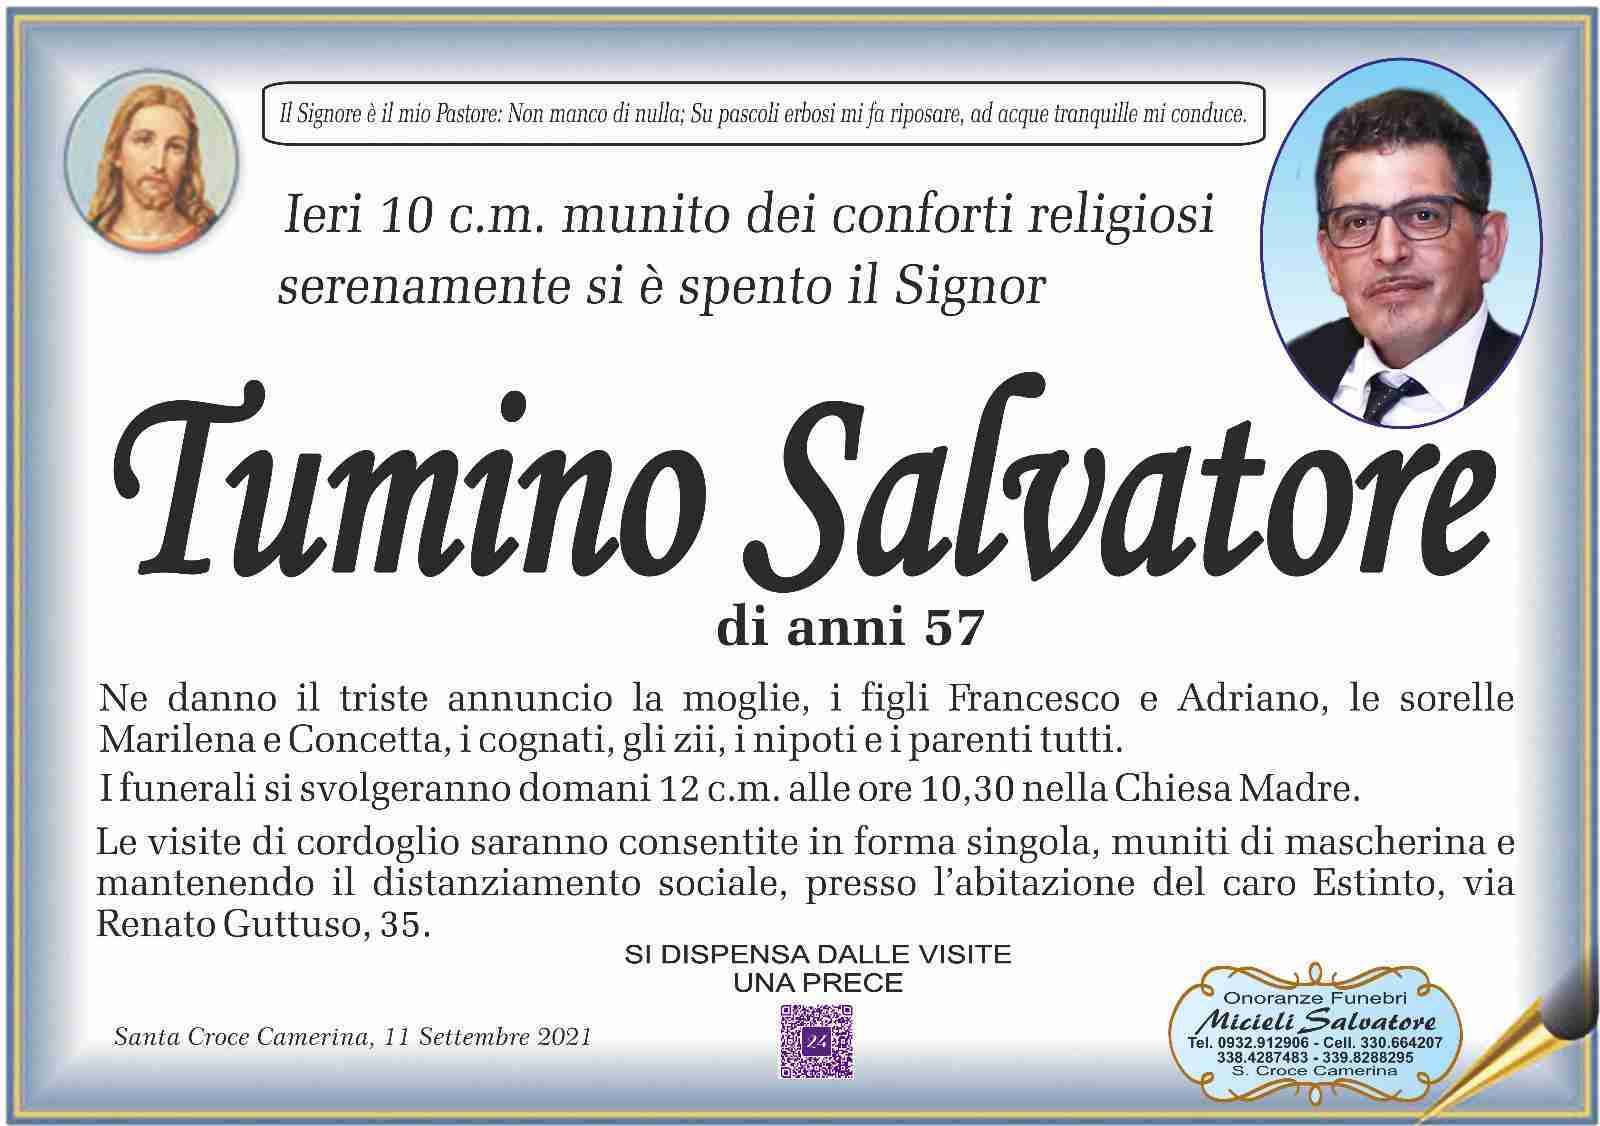 Salvatore Tumino